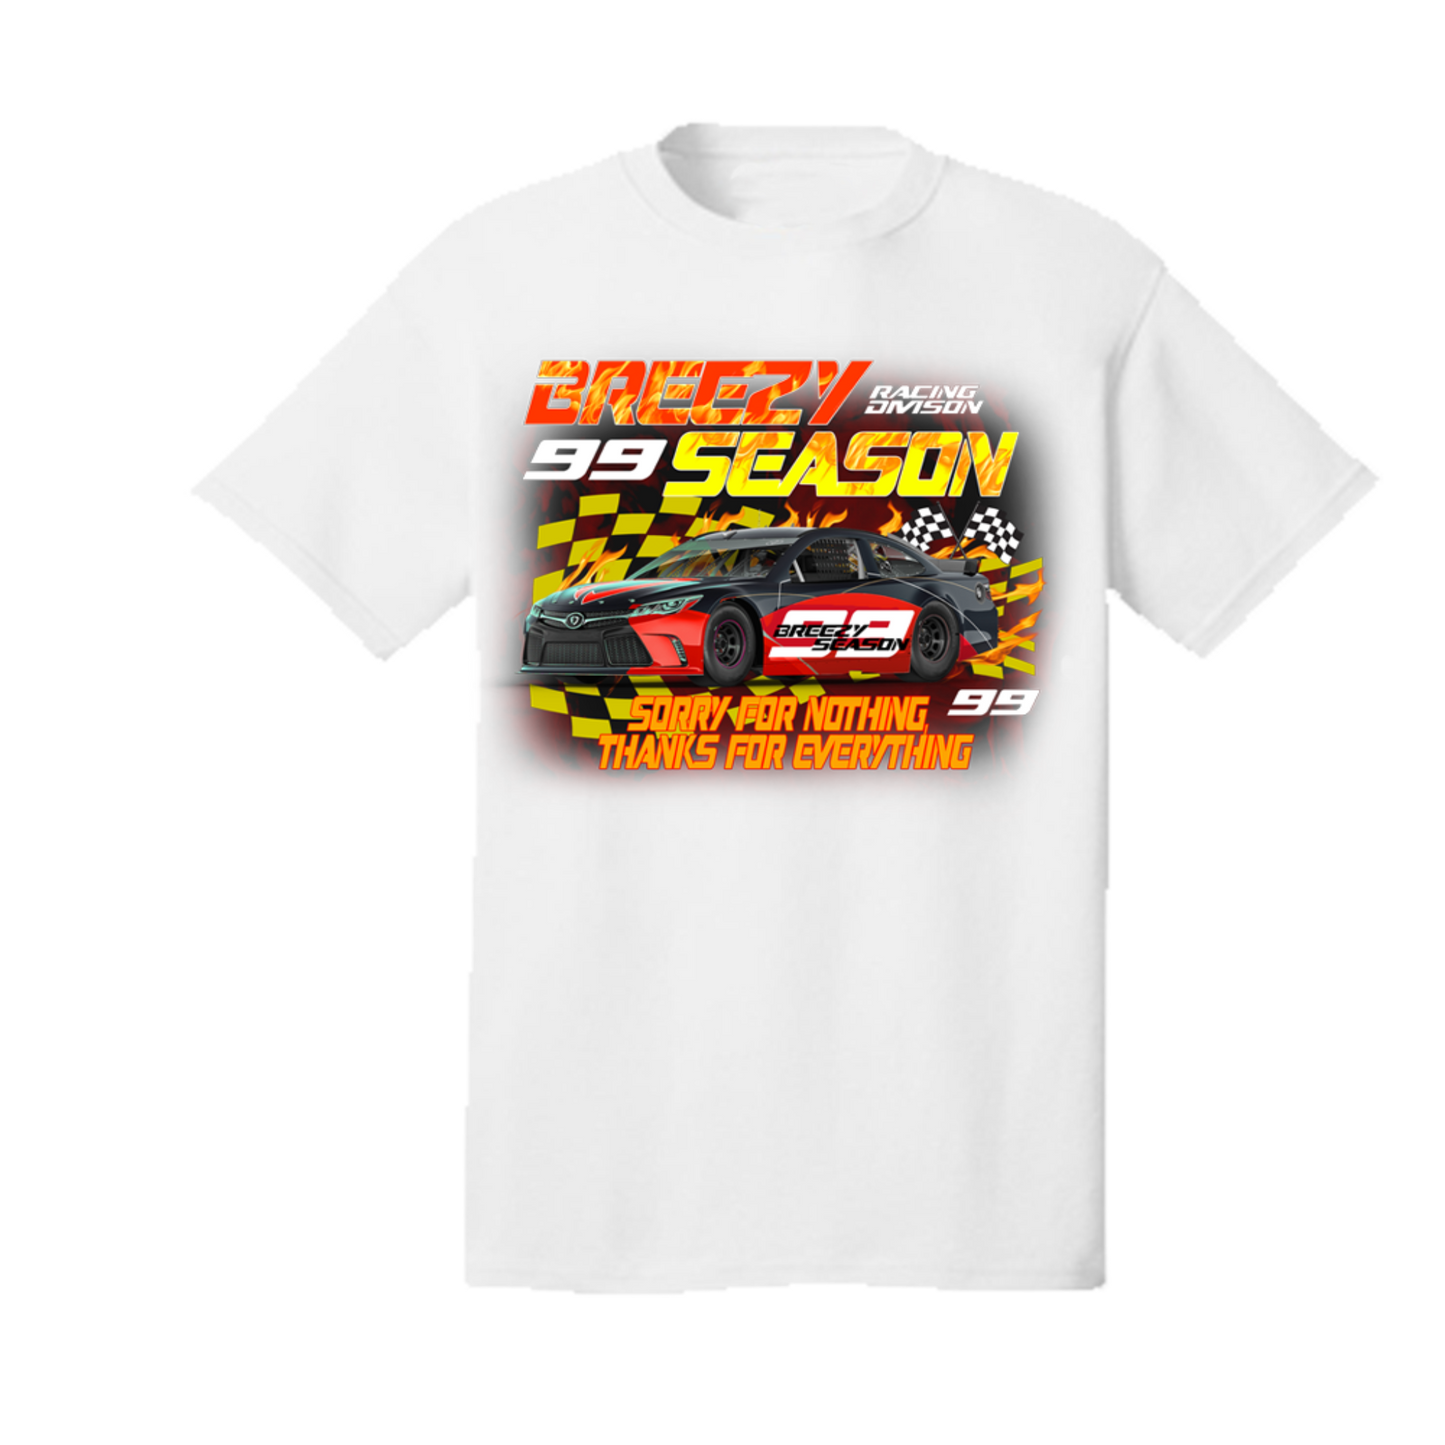 White Race Car T-Shirt - Breezy Season 